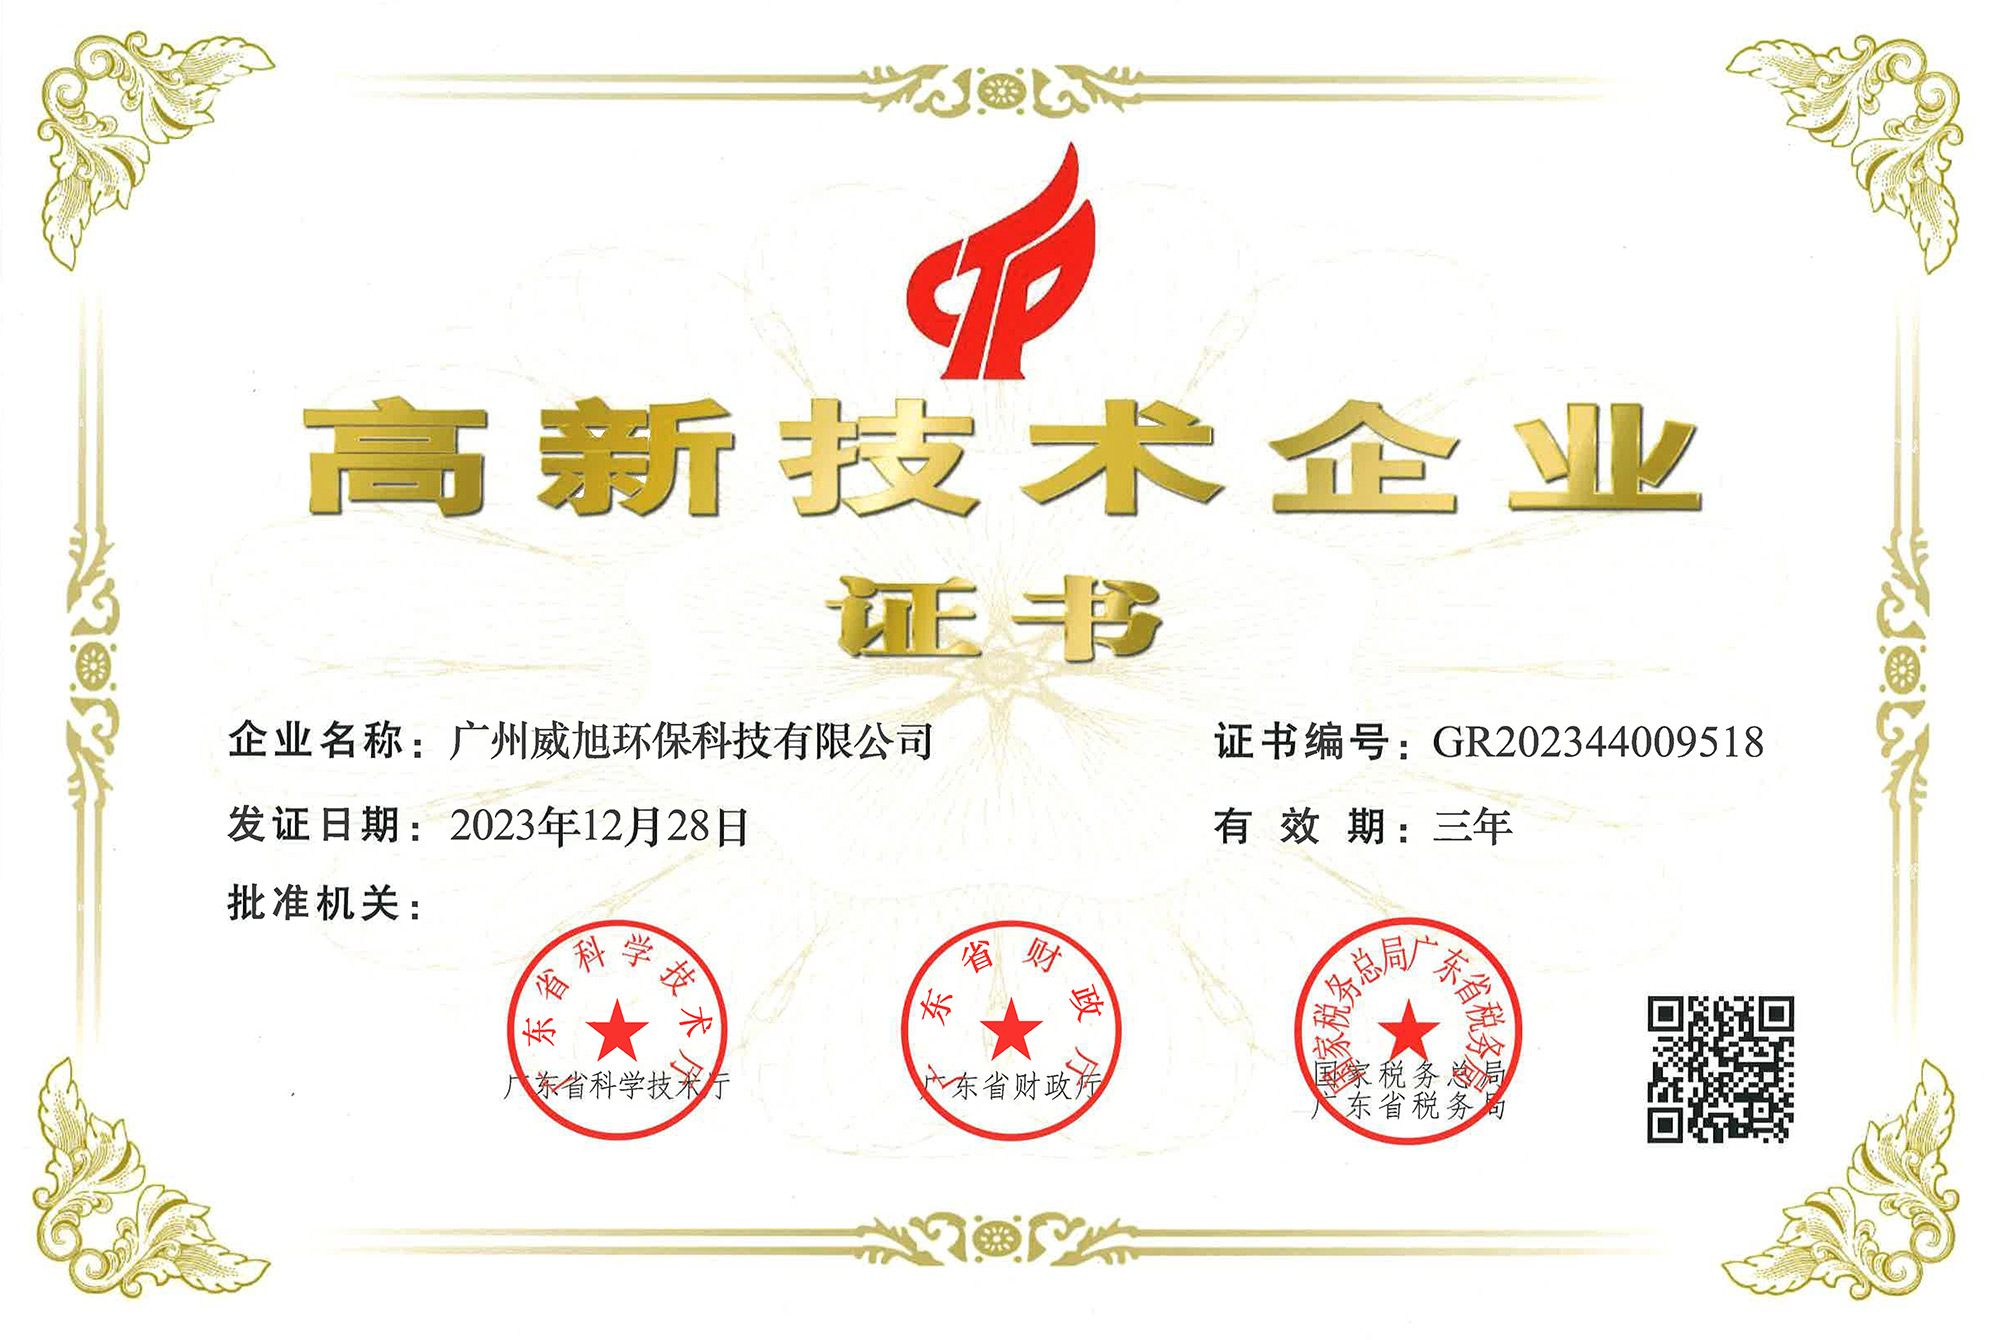 广州威旭环保科技有限公司获得国家高新技术企业证书